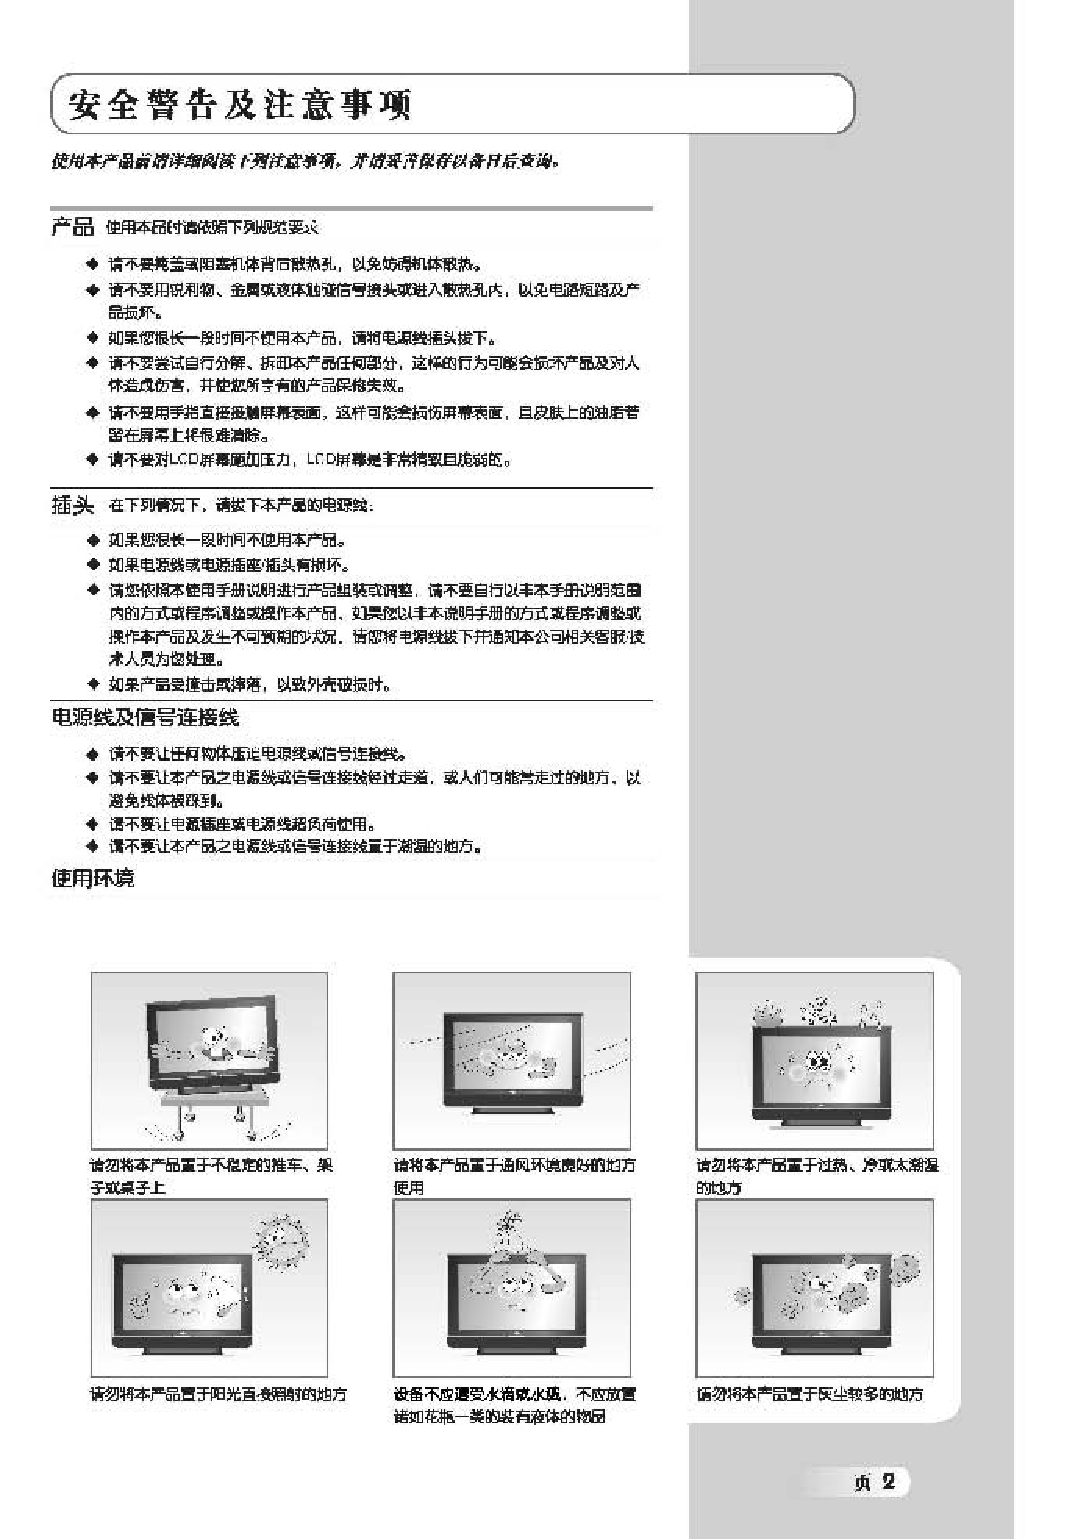 TCL LCD37K73B 使用说明书 第2页